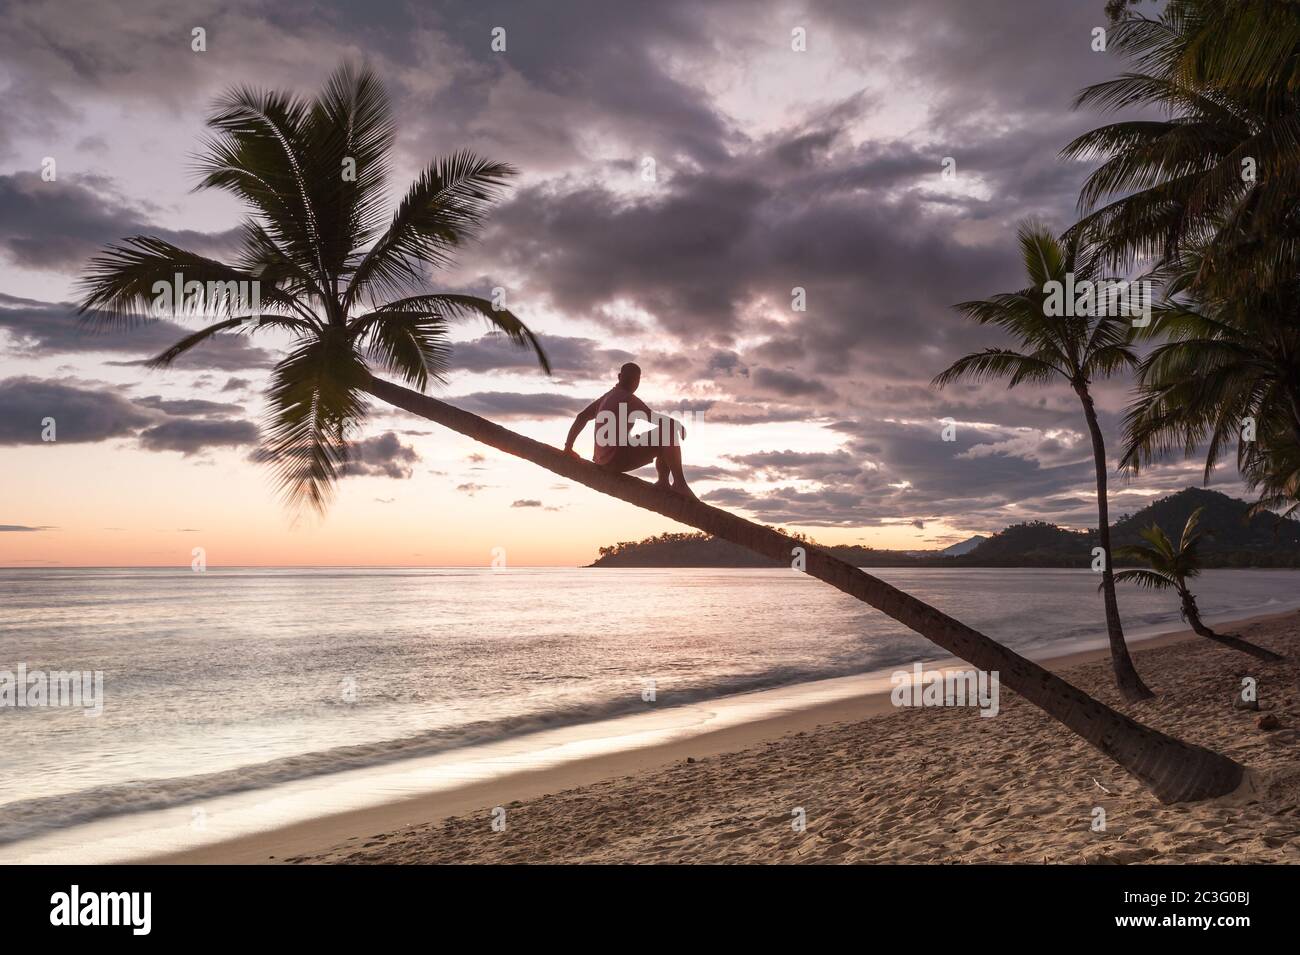 Un beachcomber descansa por un momento para disfrutar del espectacular amanecer desde un maravilloso mirador en lo alto de una palma de coco en Clifton Beach, Queensland. Foto de stock